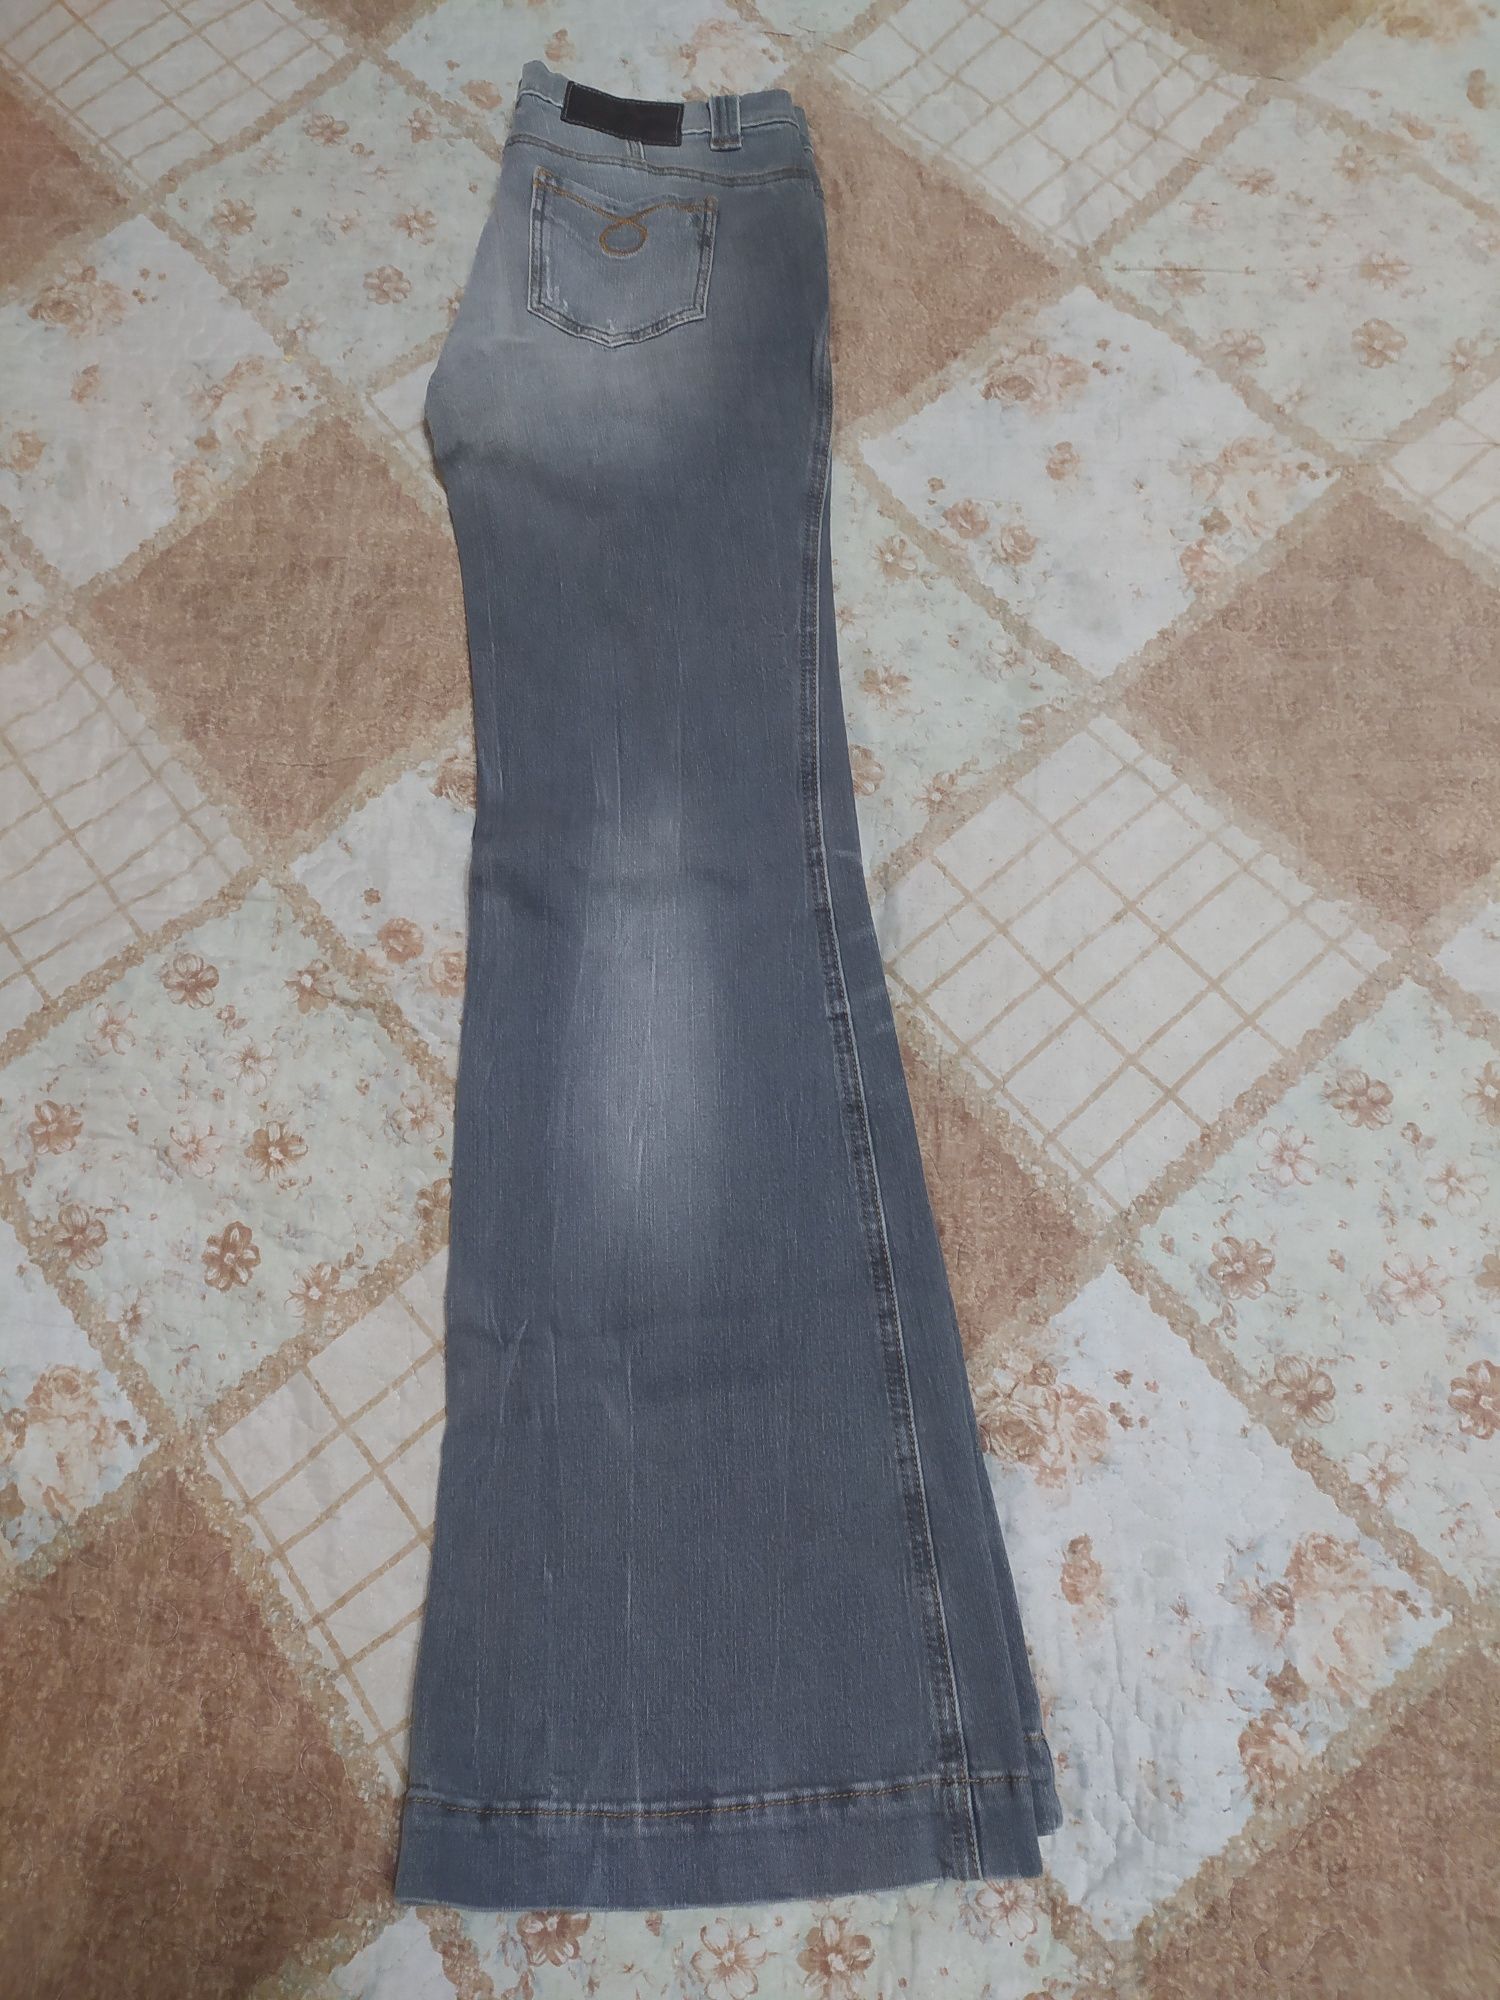 Женские джинсы размер 29 на рост 170 см